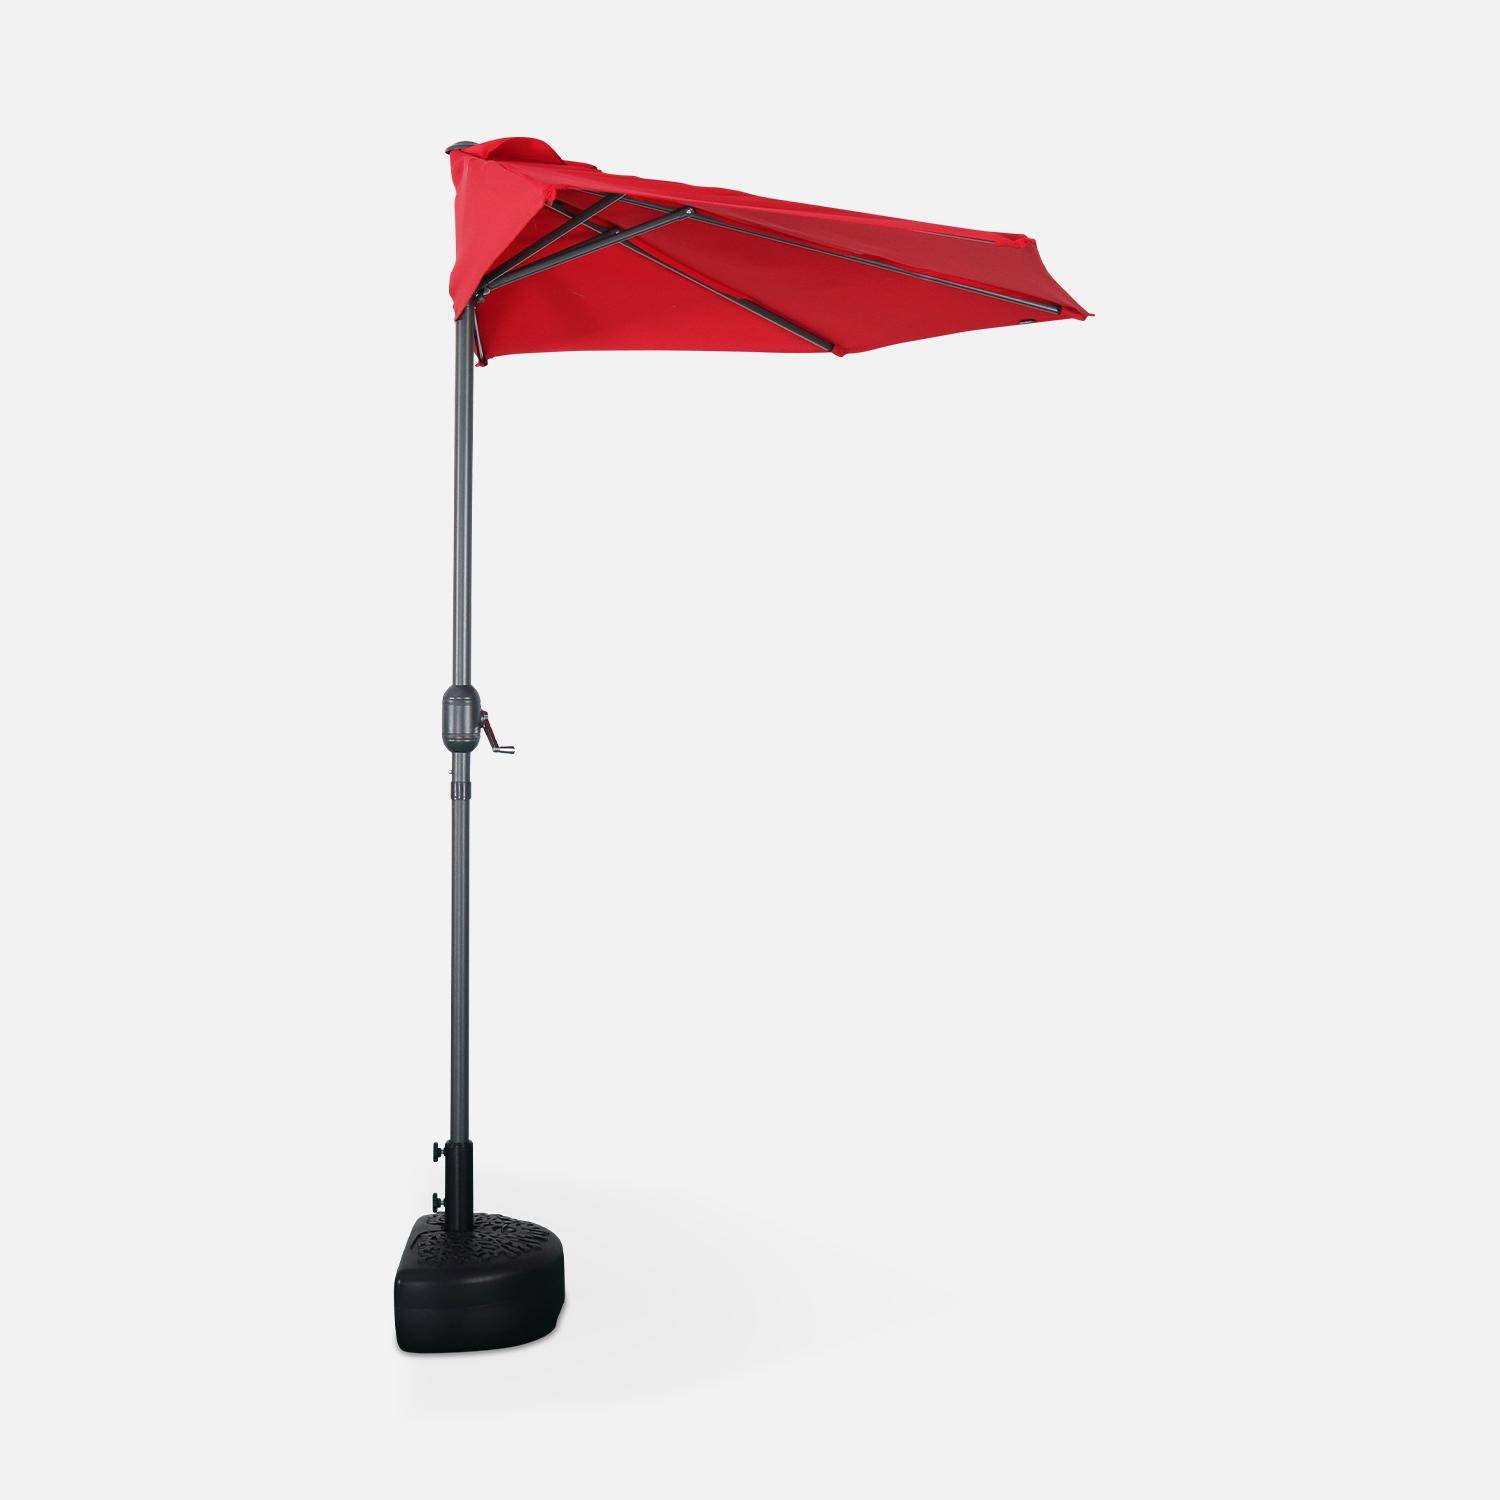  Parasol de balcon Ø250cm  – CALVI – Demi-parasol droit, mât en aluminium avec manivelle d’ouverture, toile rouge Photo3